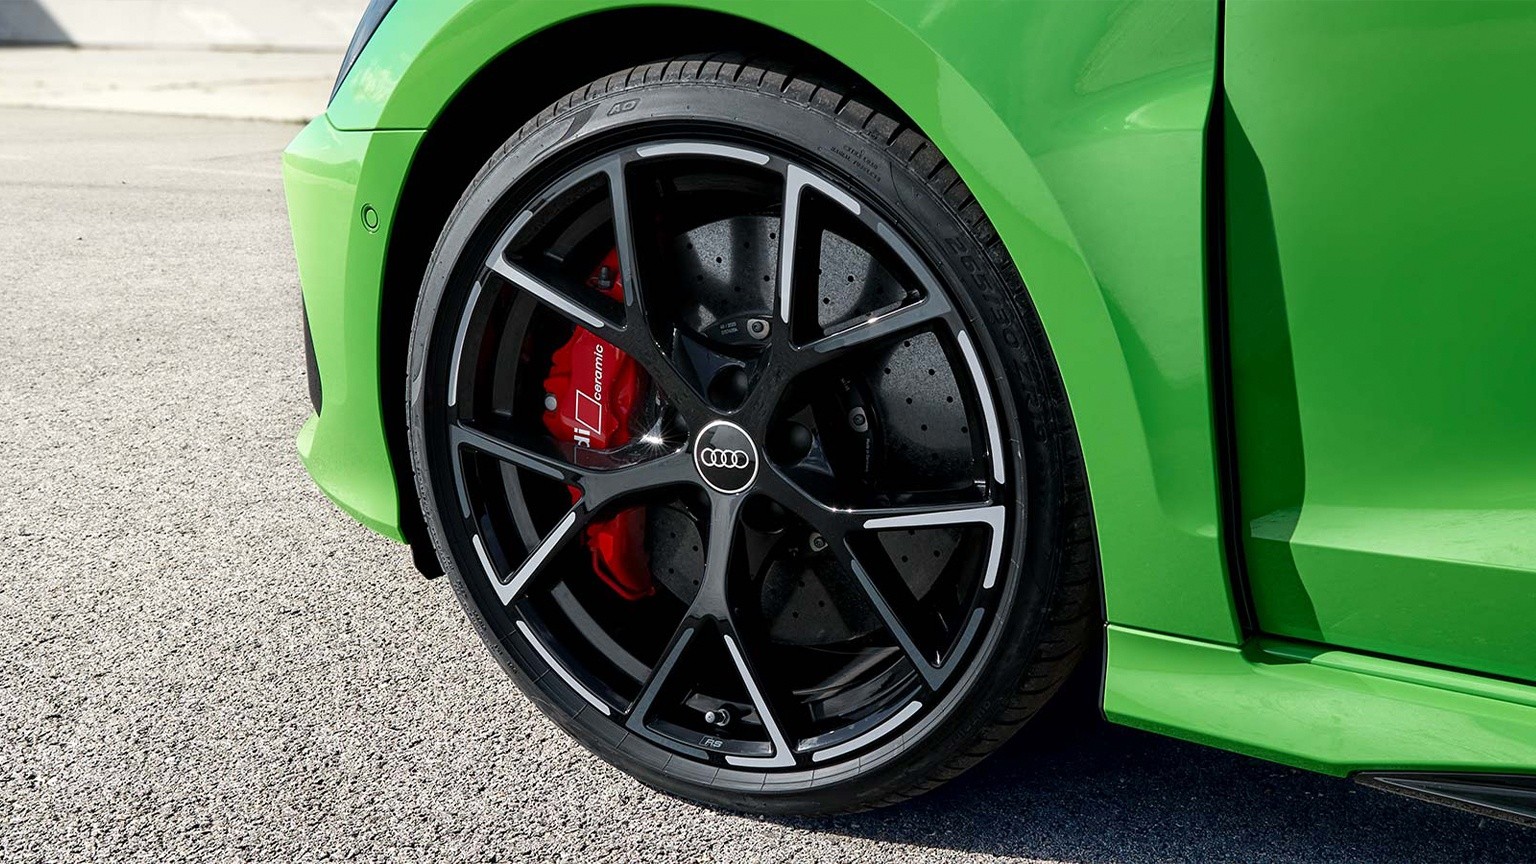 Inspirado en la deportividad.- Con los neumáticos opcionales para velocidades más altas, podrás sentir el impresionante rendimiento del Audi RS 3 Sedán en carretera. Detrás de las salpicaderas delanteras hay una gran salida de aire adicional que recuerda a un auto listo para competir.